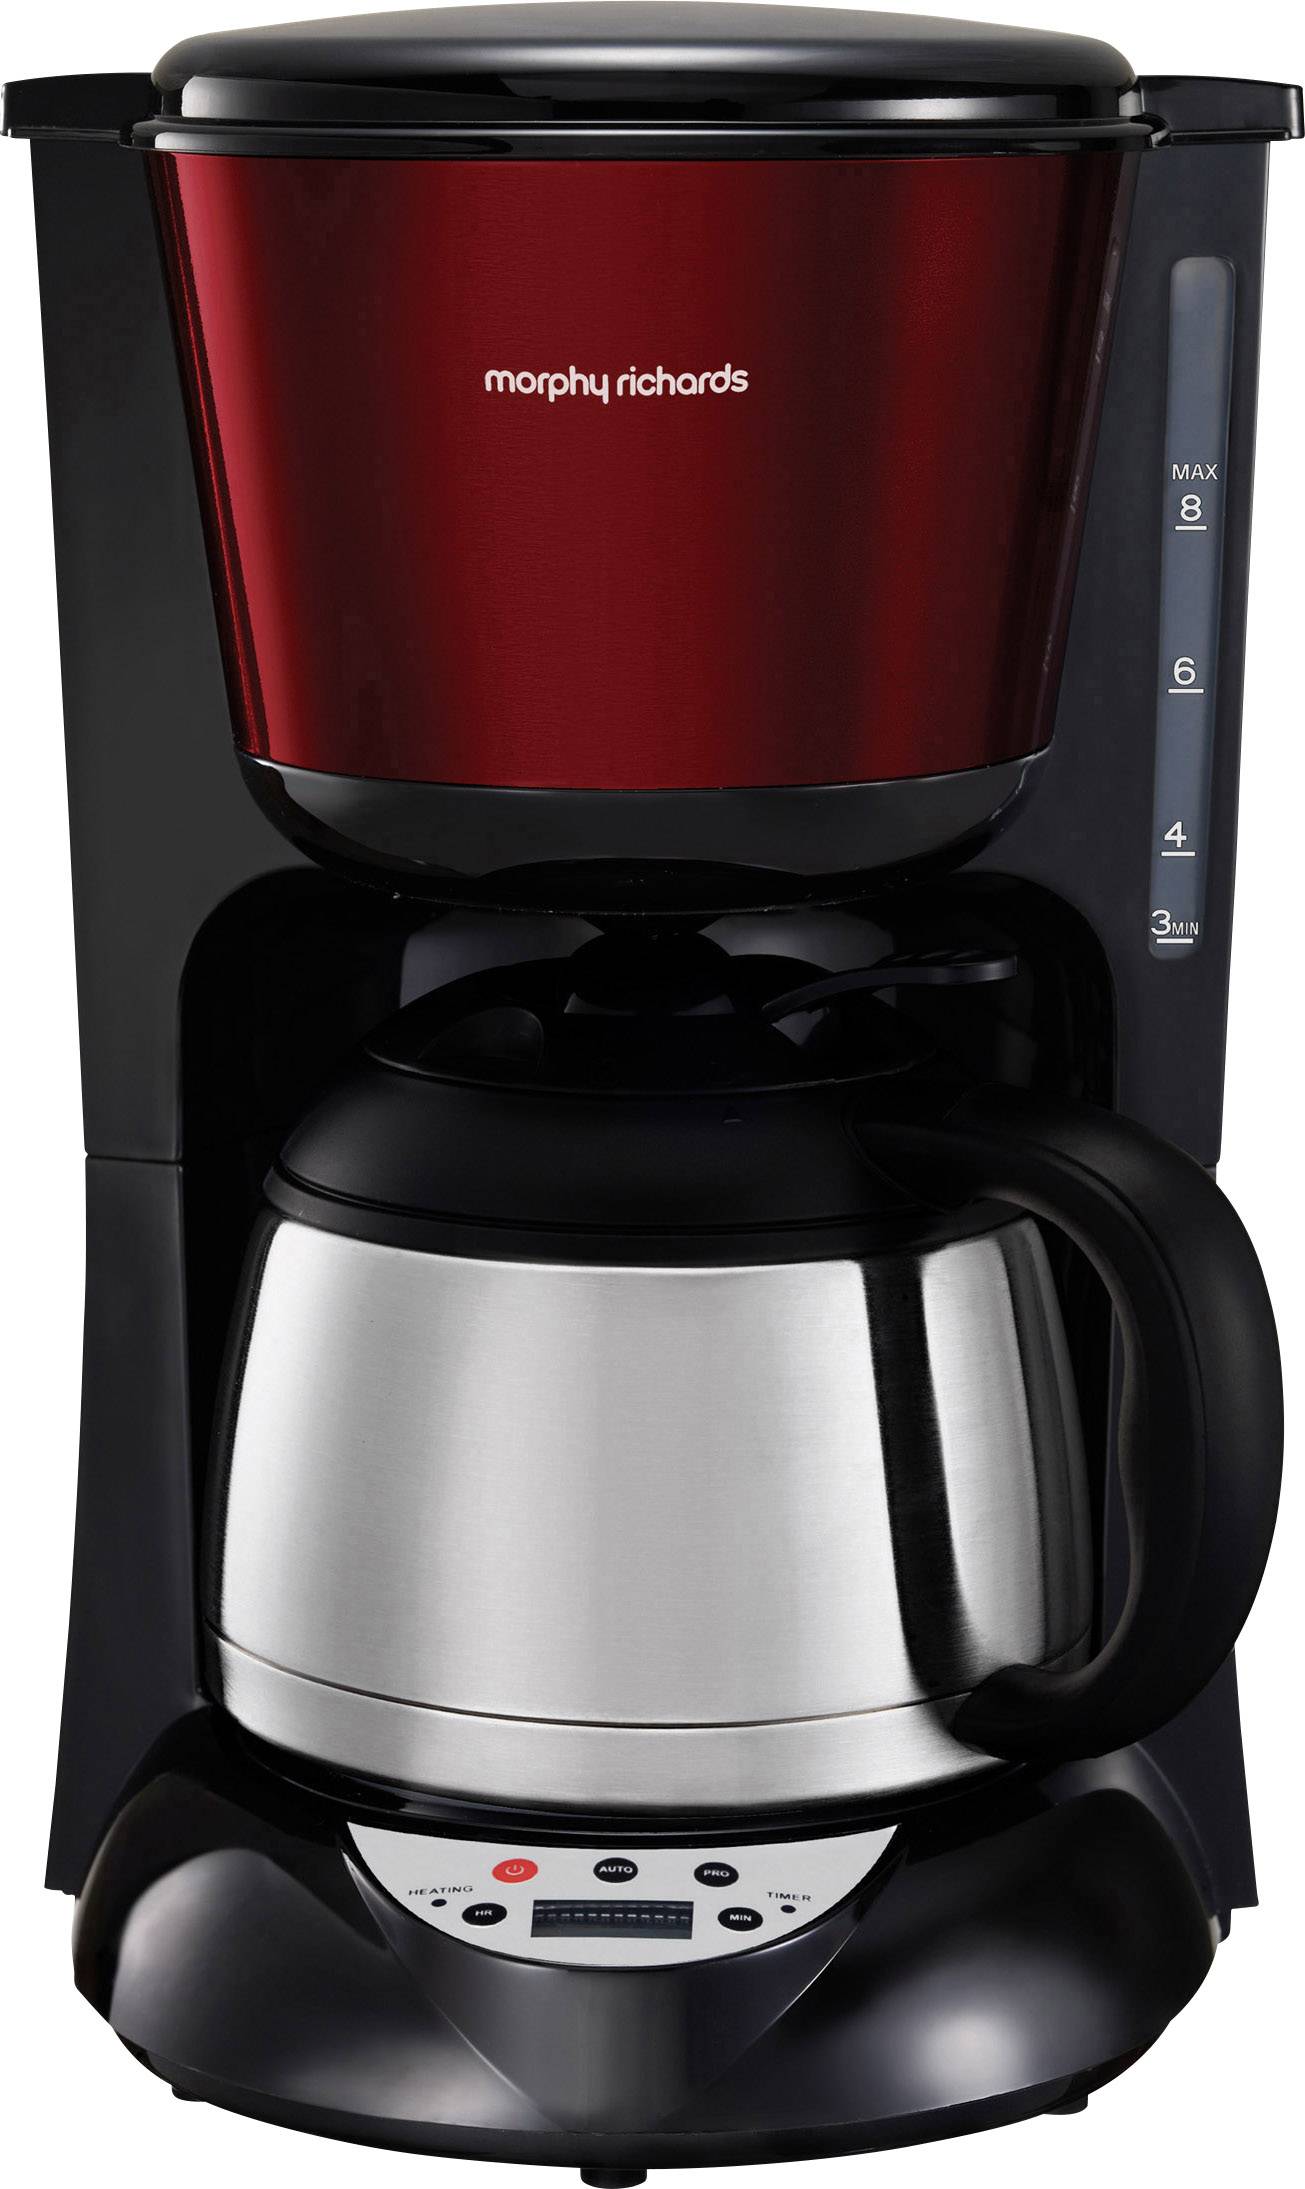 Børnehave stak Forord Morphy Richards Accents Kaffemaskine Rustfrit stål, Rød Termokande,  Funktion til at holde kaffen varm, Timerfunktion, købe